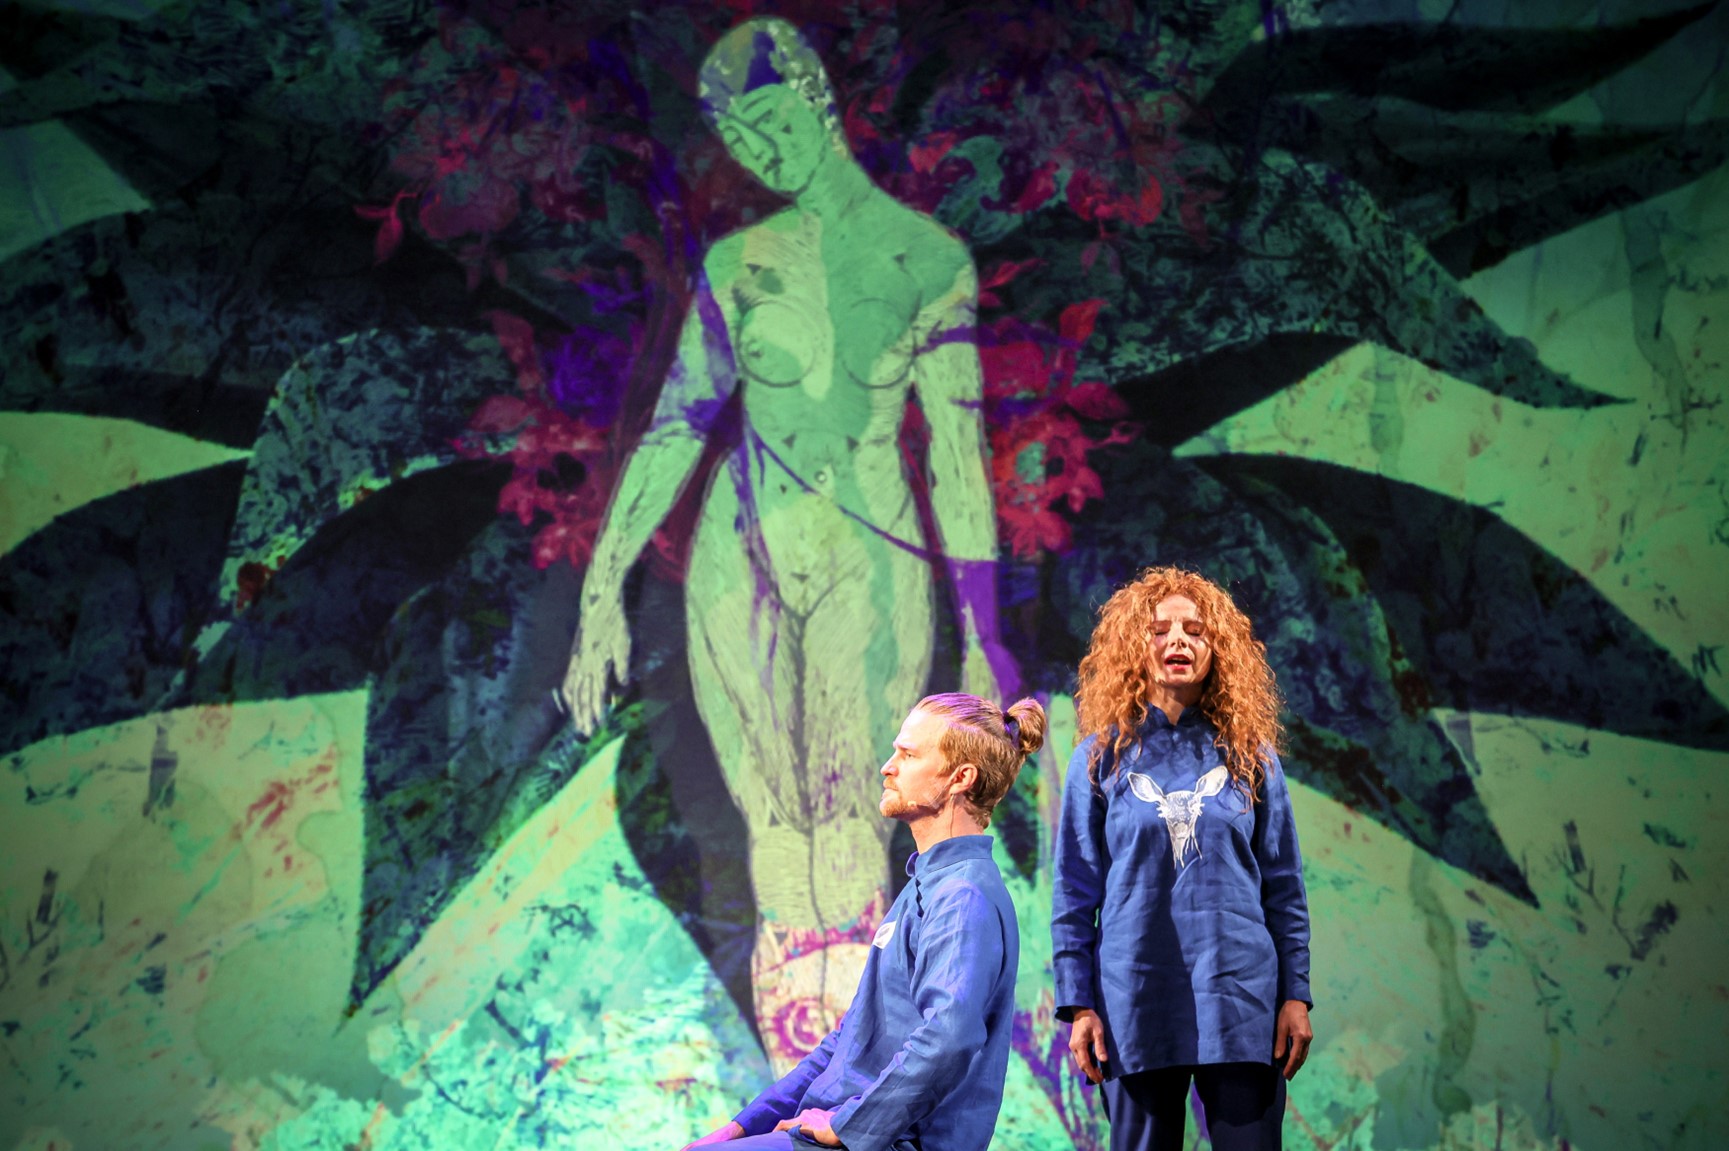 Kadr ze spektaklu "Natura ludzka". Kobieta stoi, mężczyzna siedzi. Oboje mają rude włosy. Za nimi grafika przedstawiająca człowieka na tle ciemnego rozchylonego kwiatka.